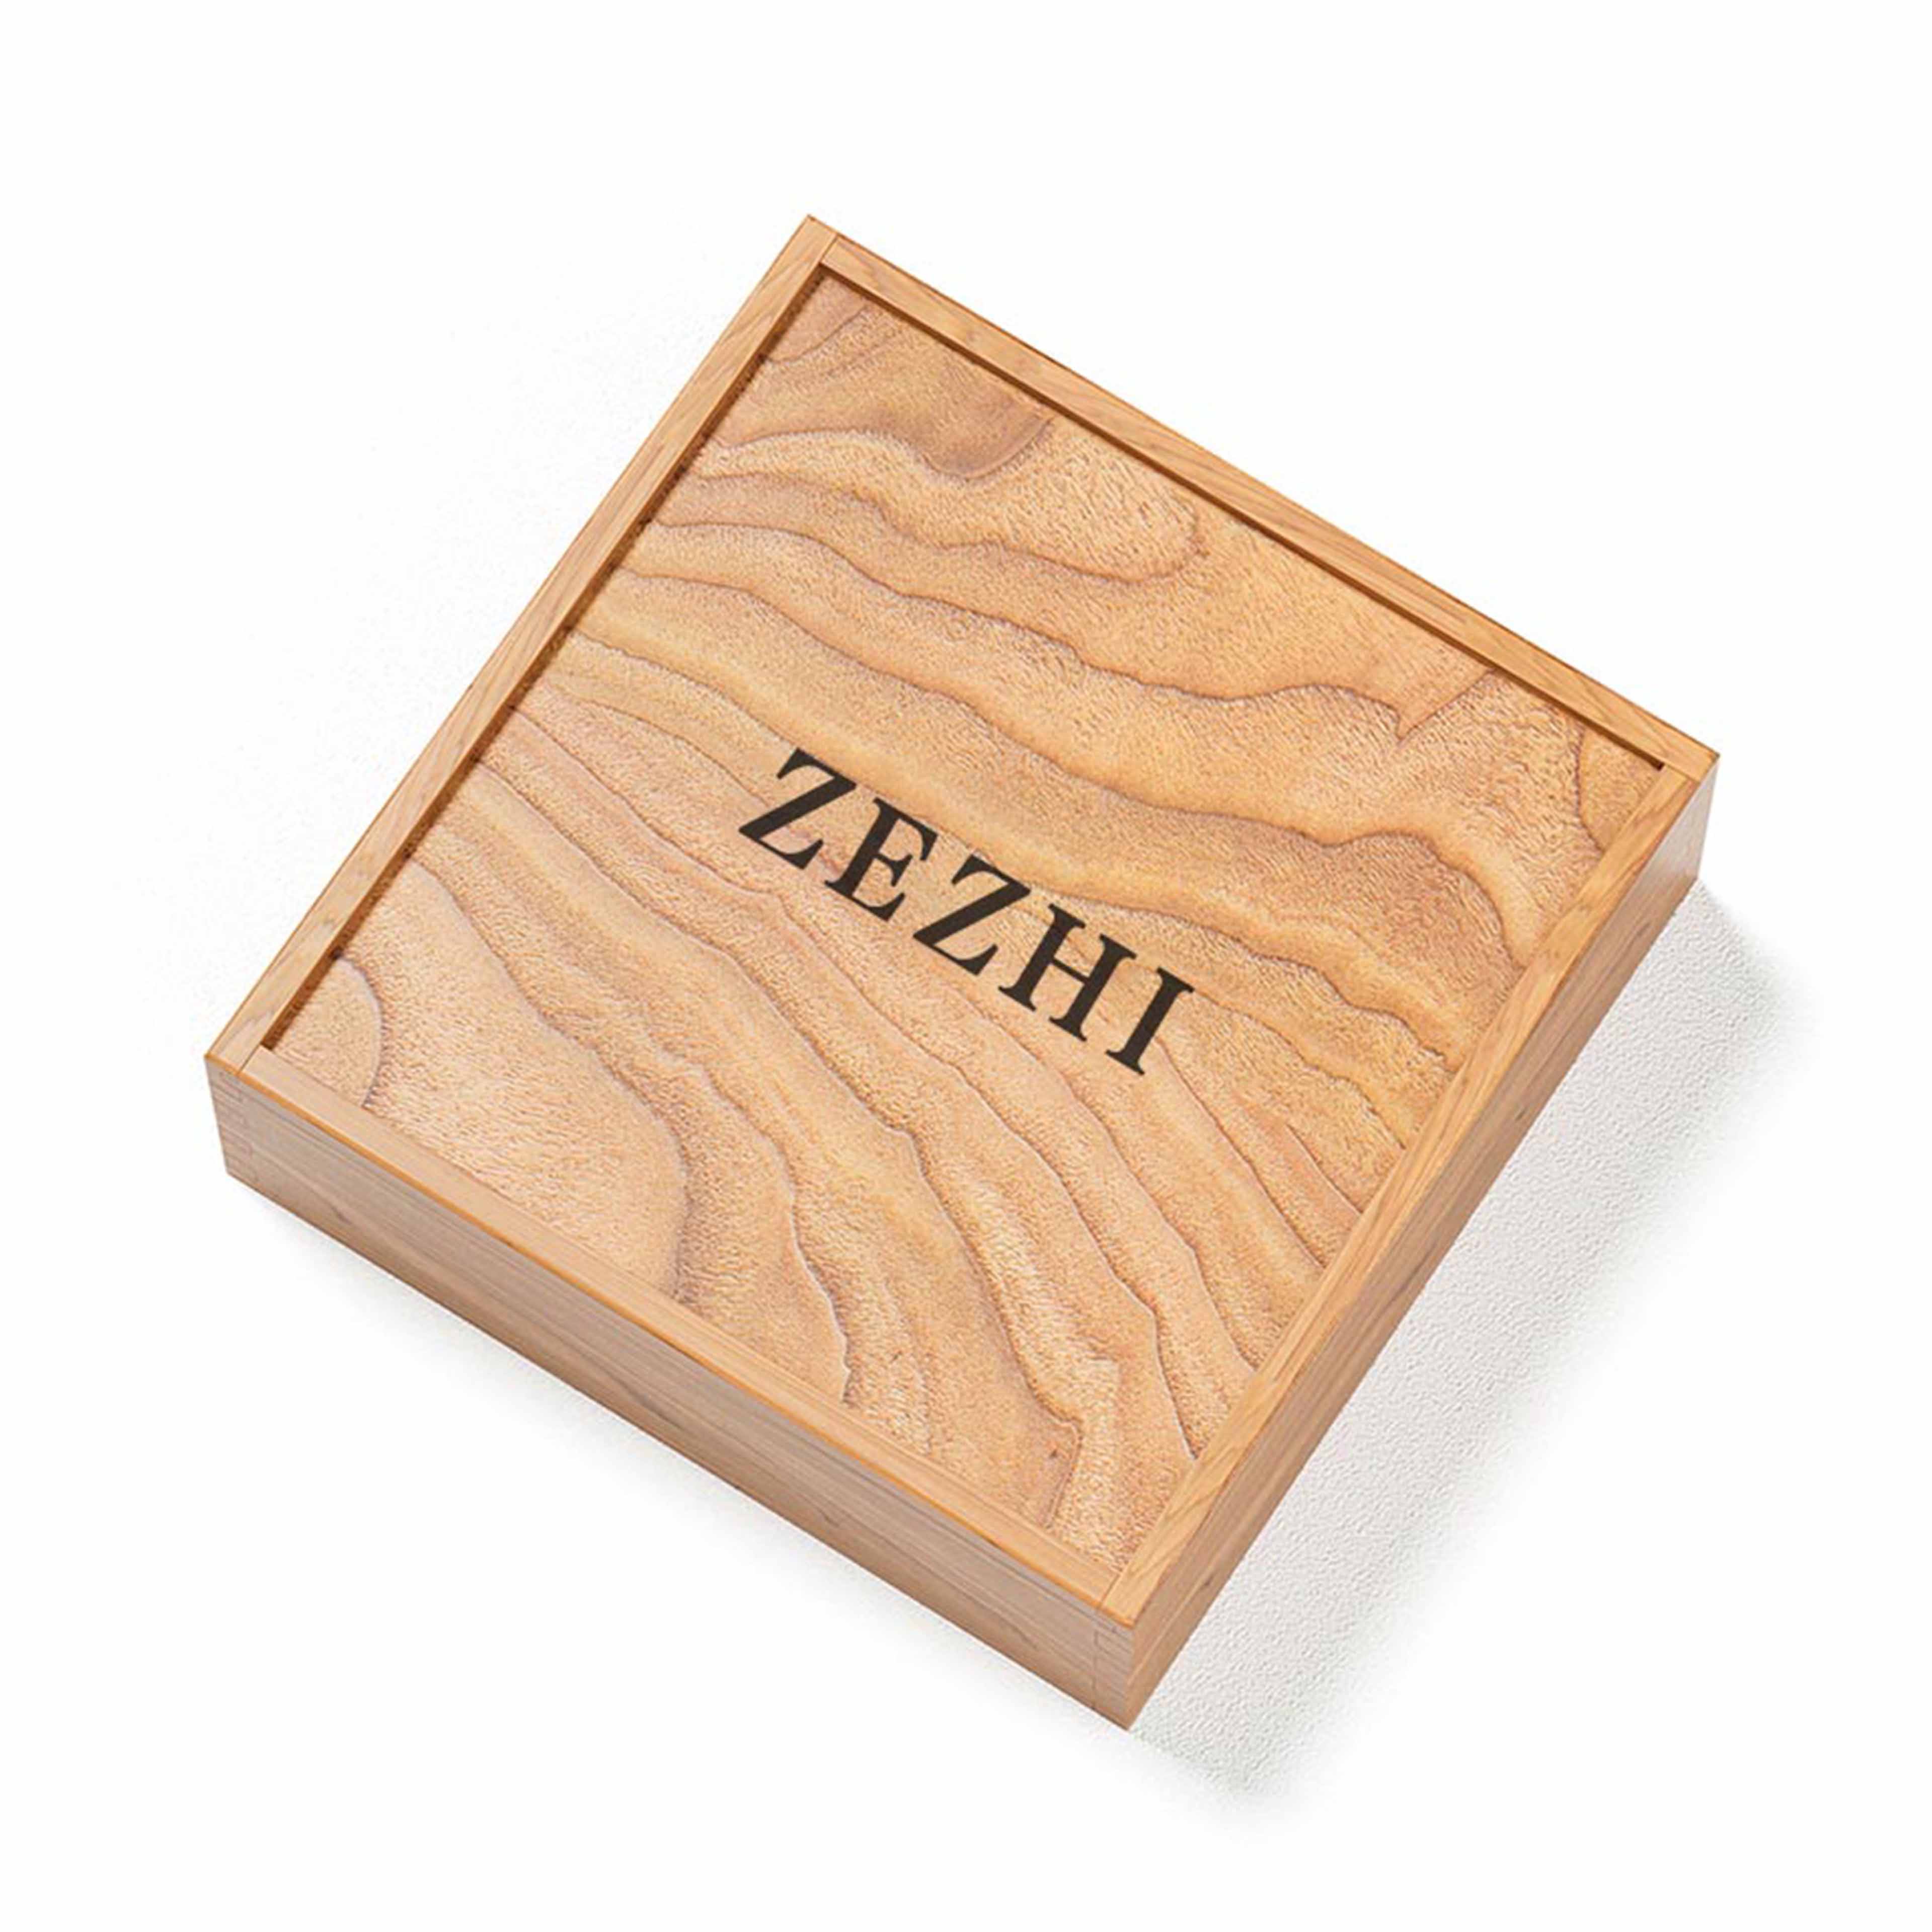 上海苏州产品设计产品外观设计包装设计礼盒包装设计